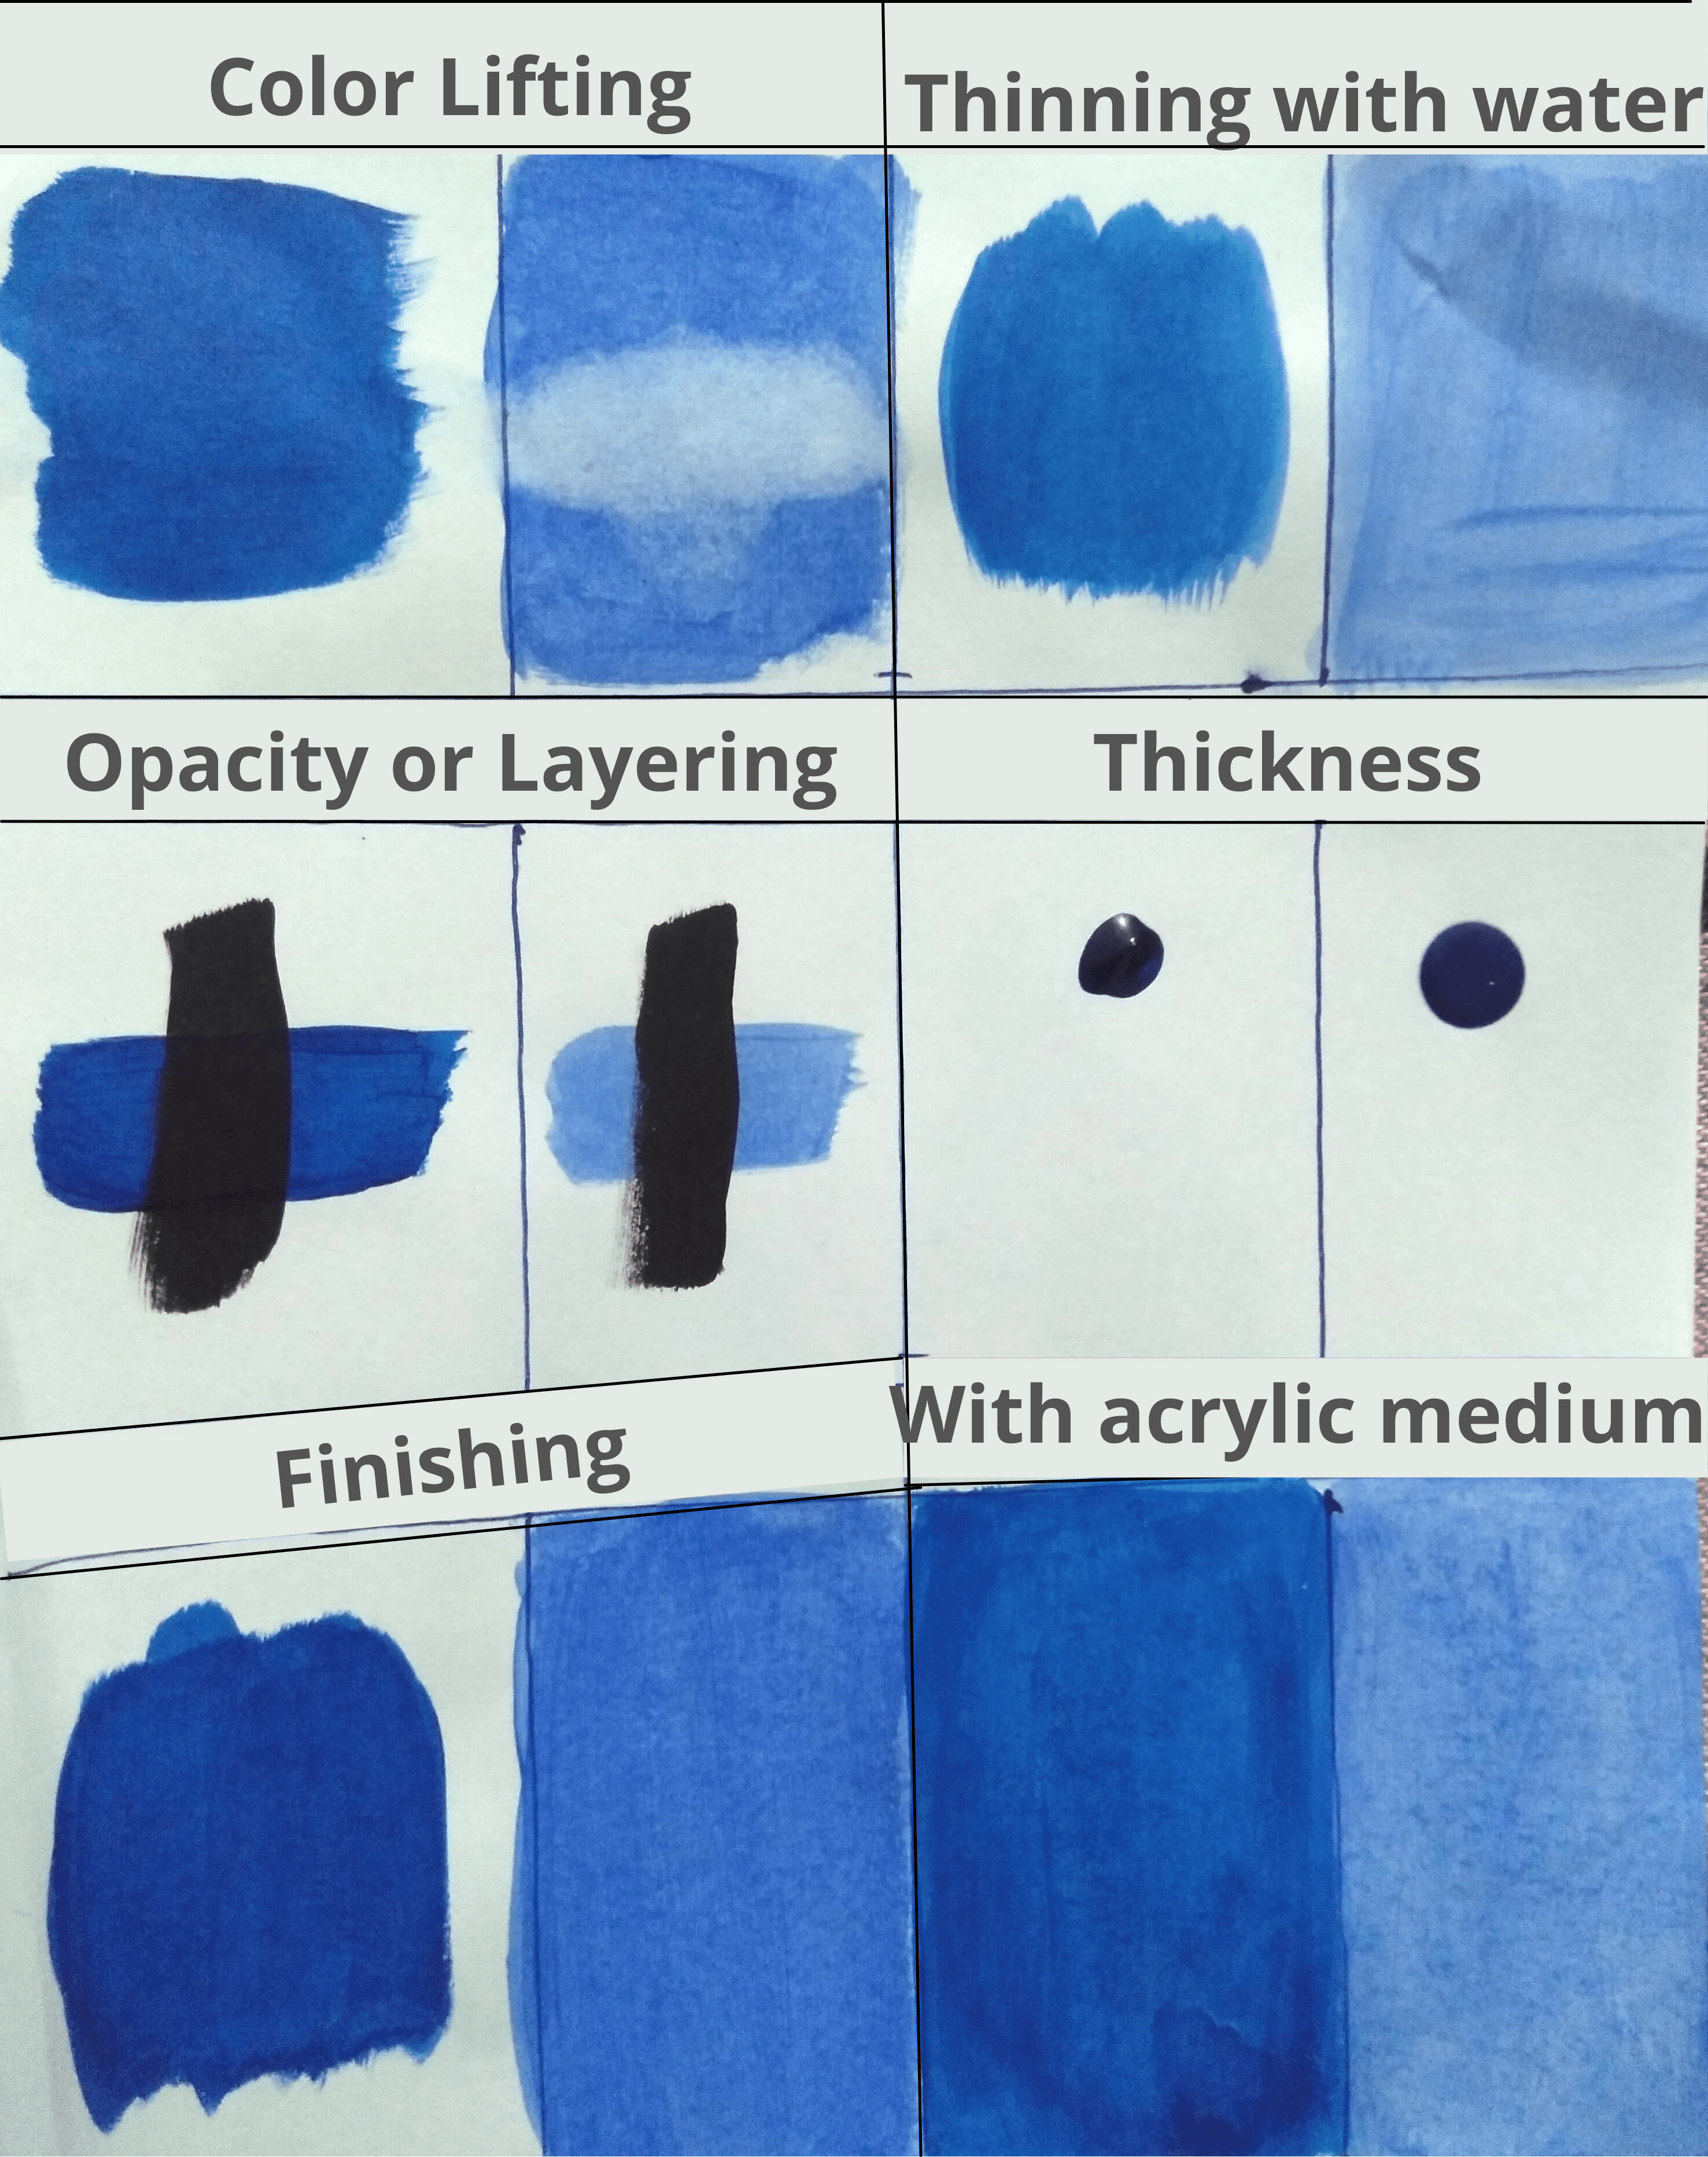 Tempera vs. Acrylic Paint